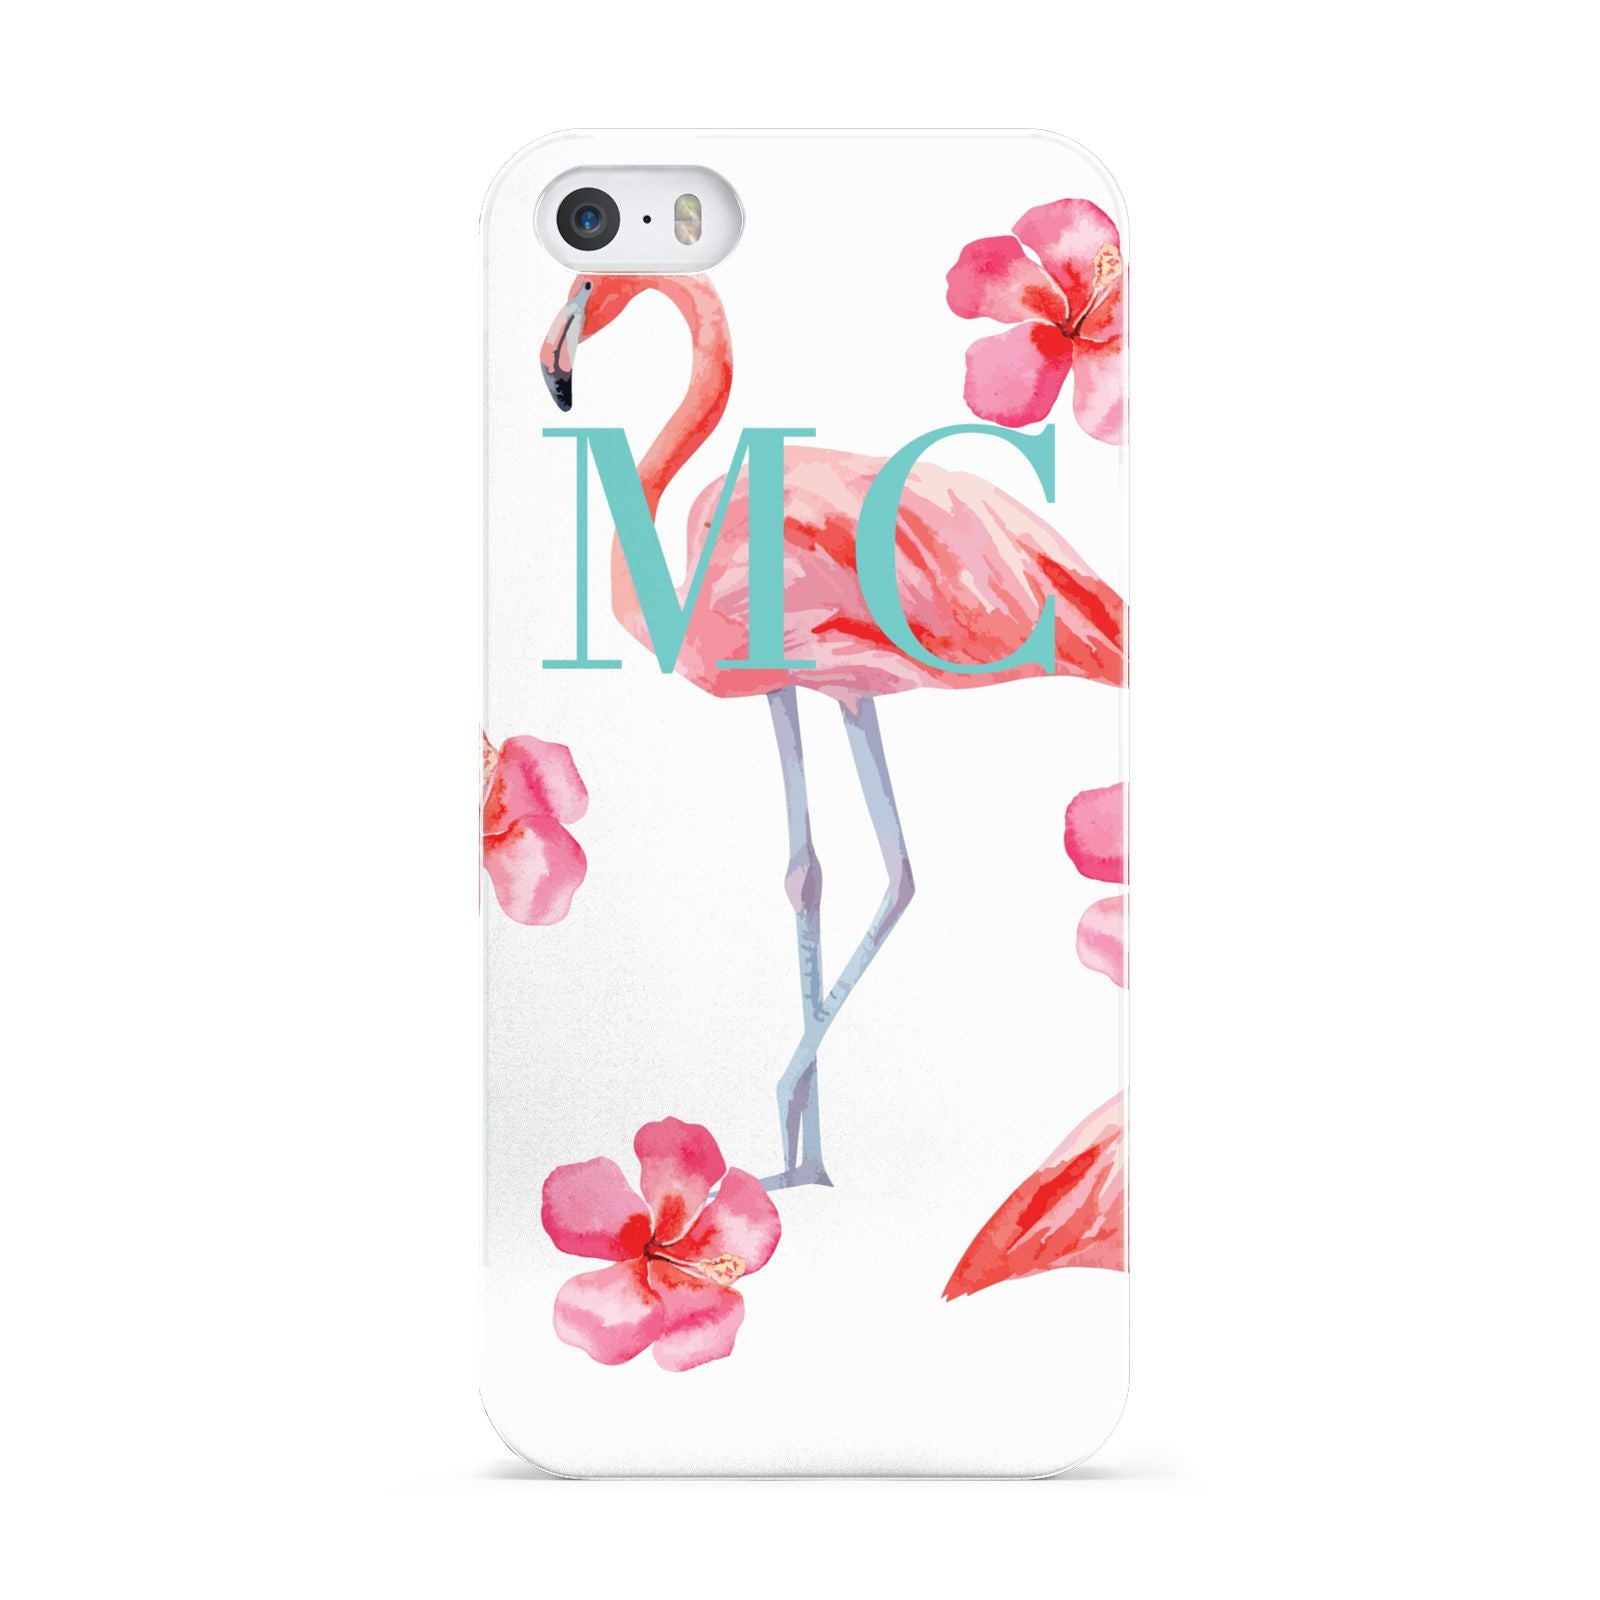 Personalised Initials Flamingo 3 Apple iPhone 5 Case